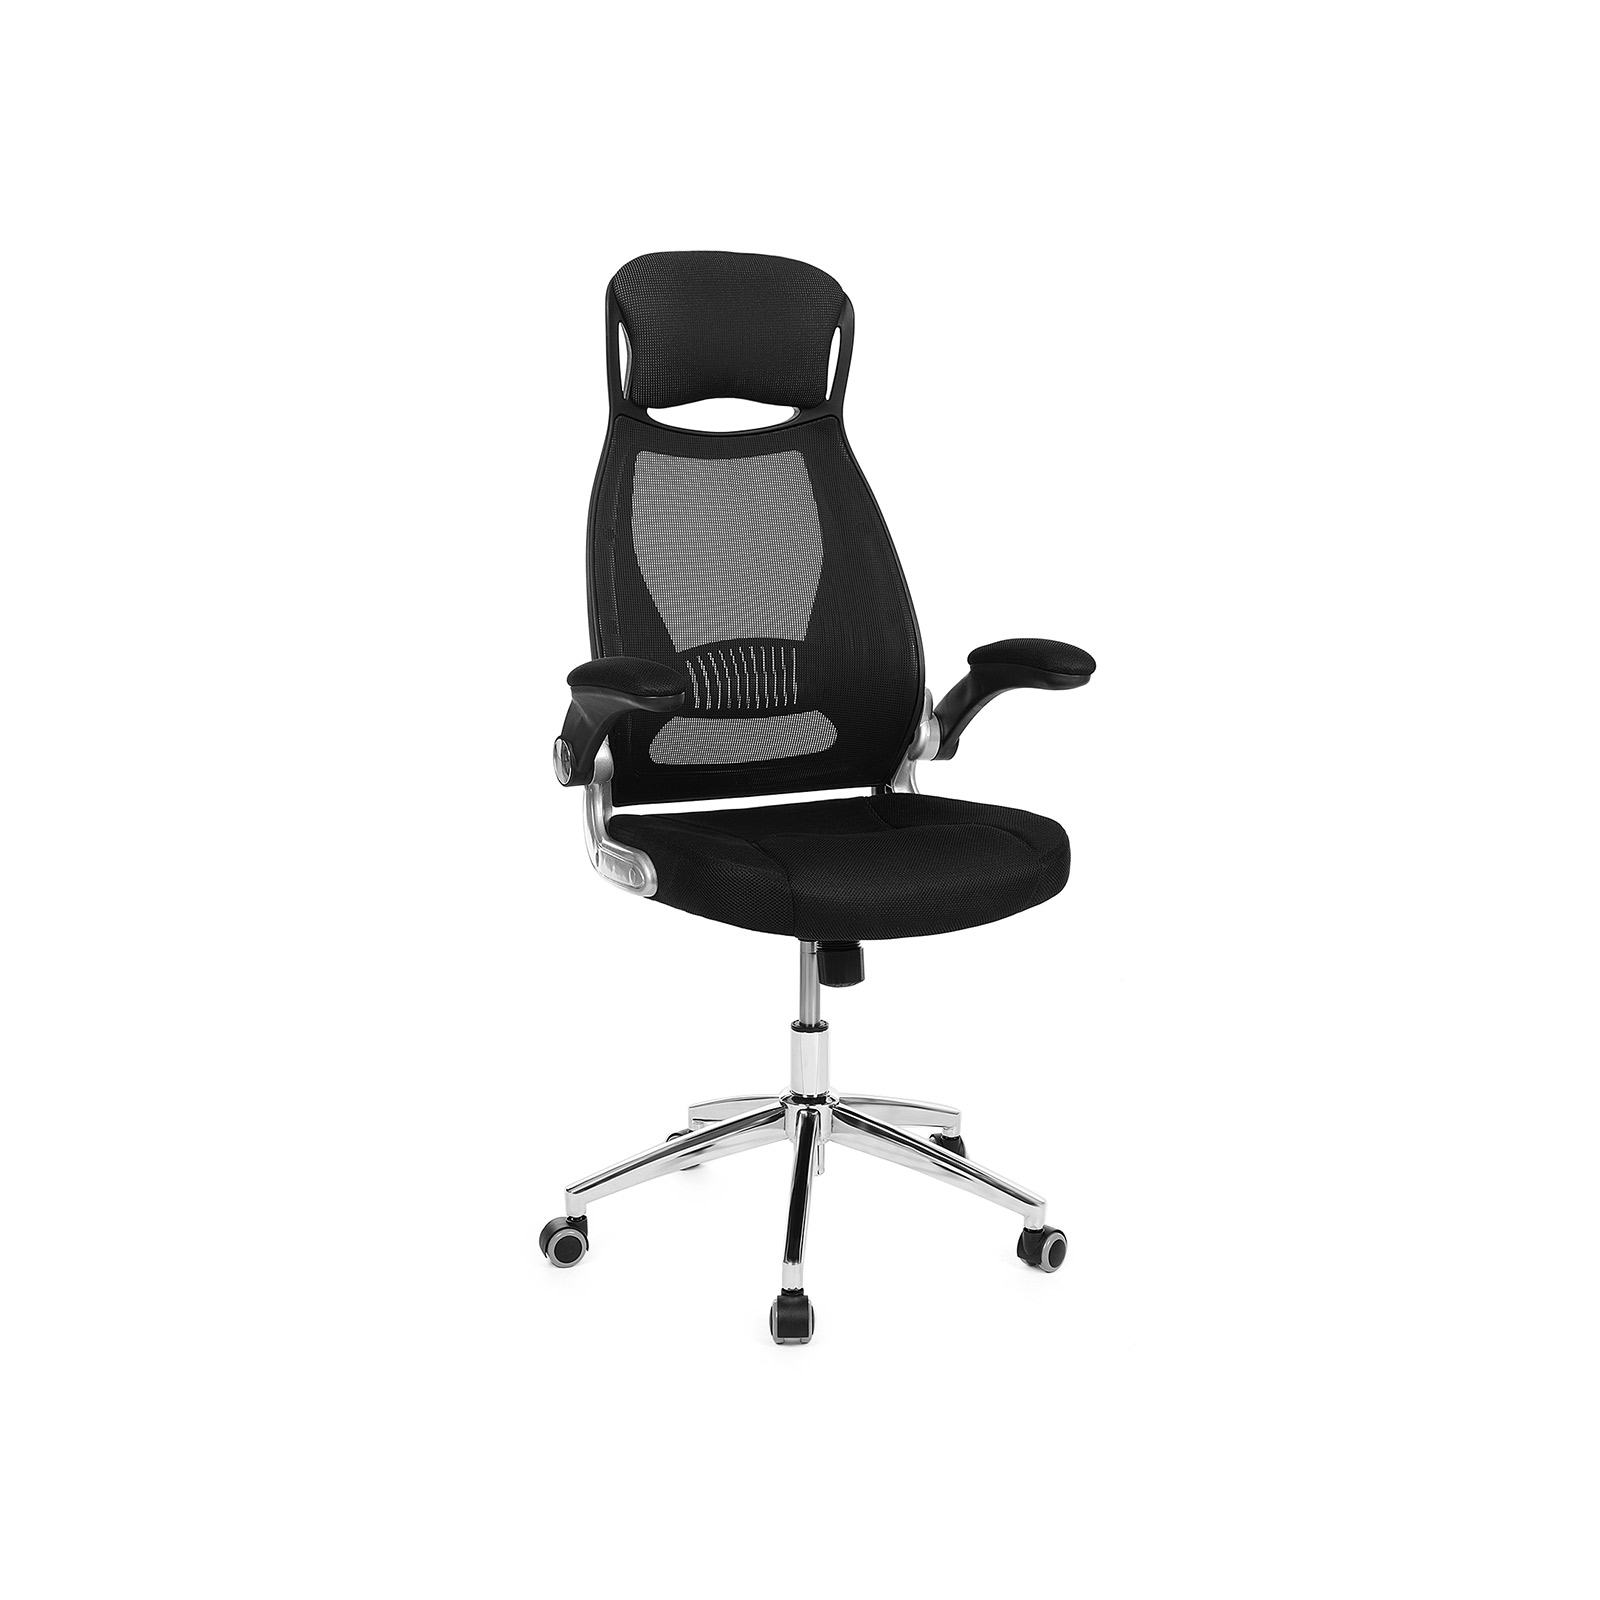 Biuro kėdė modernaus dizaino su tinkleliu ergonominė juoda